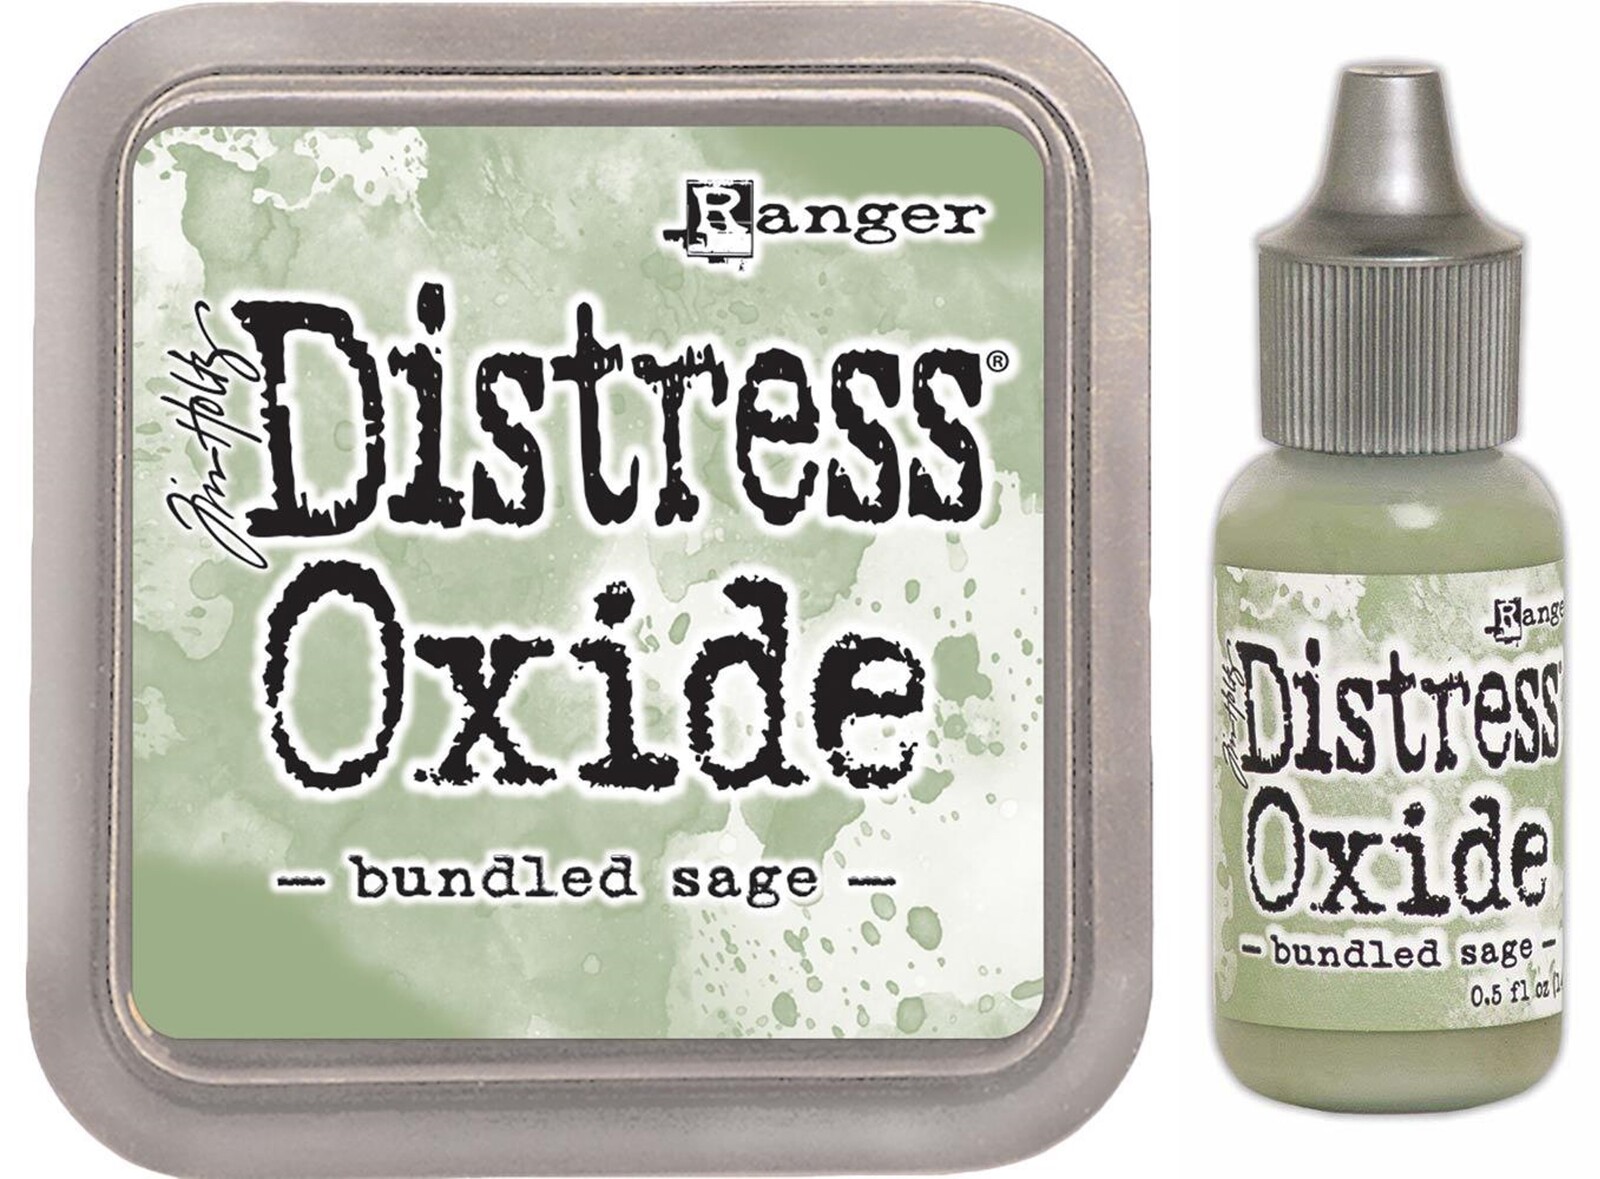 Tim Holtz Distress Oxide Ink Pad + Reinker Bundled Sage